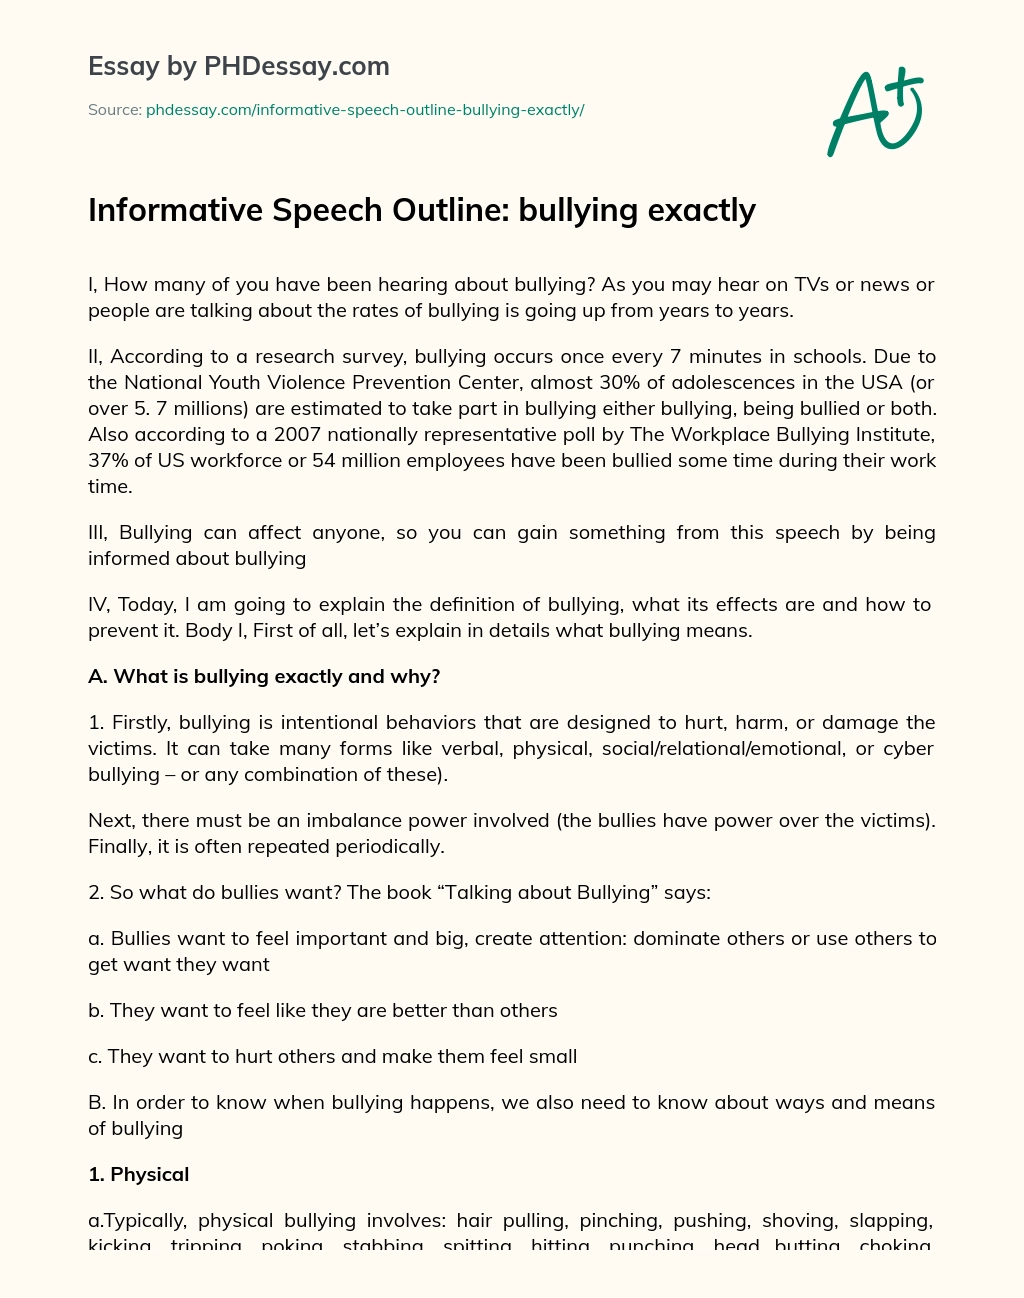 persuasive speech on bullying outline